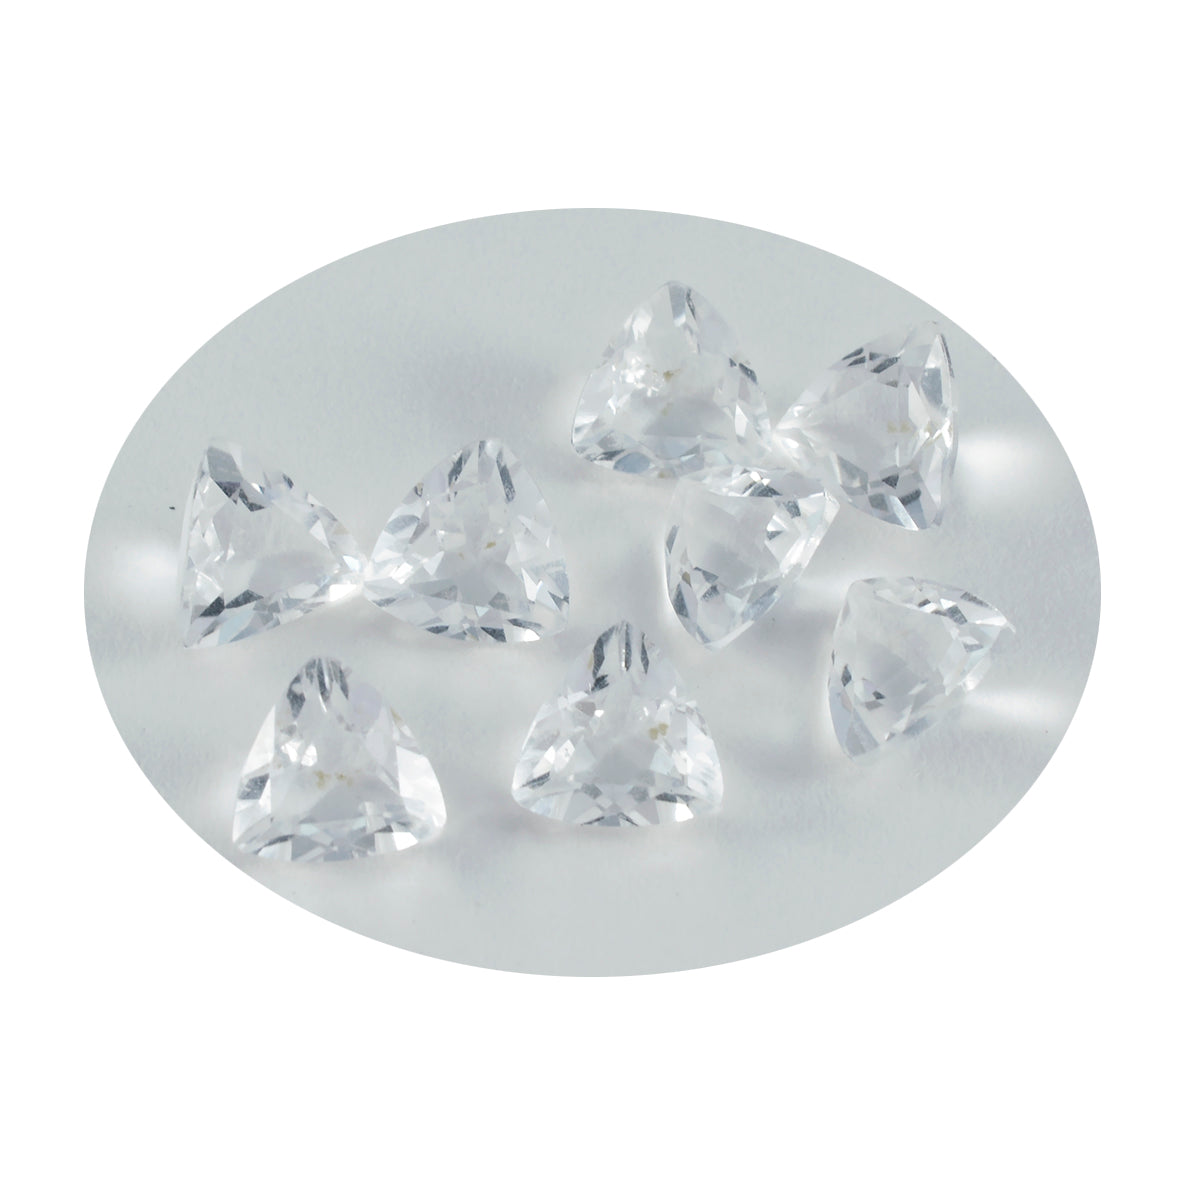 Riyogems 1 Stück weißer Kristallquarz, facettiert, 8 x 8 mm, Billionenform, tolle Qualität, loser Edelstein